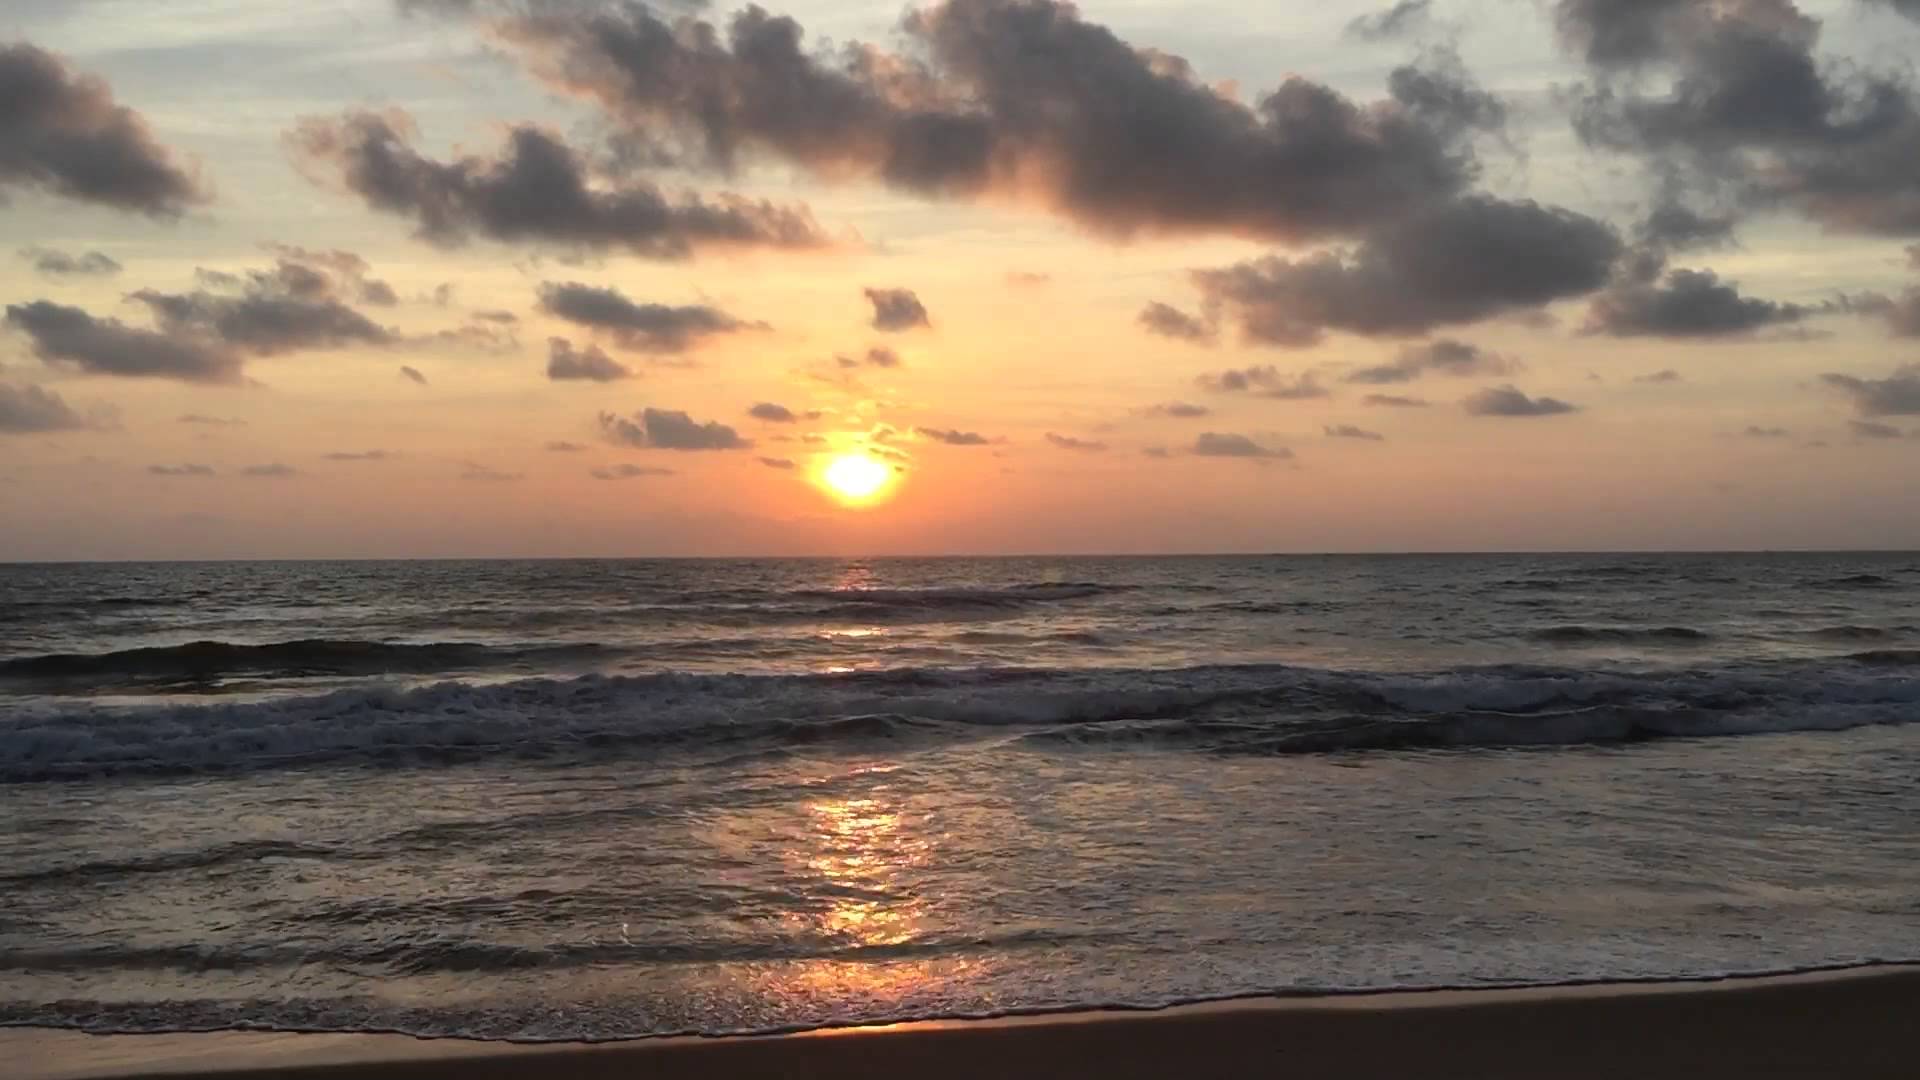 Sunset, India, Mamallapuram - YouTube